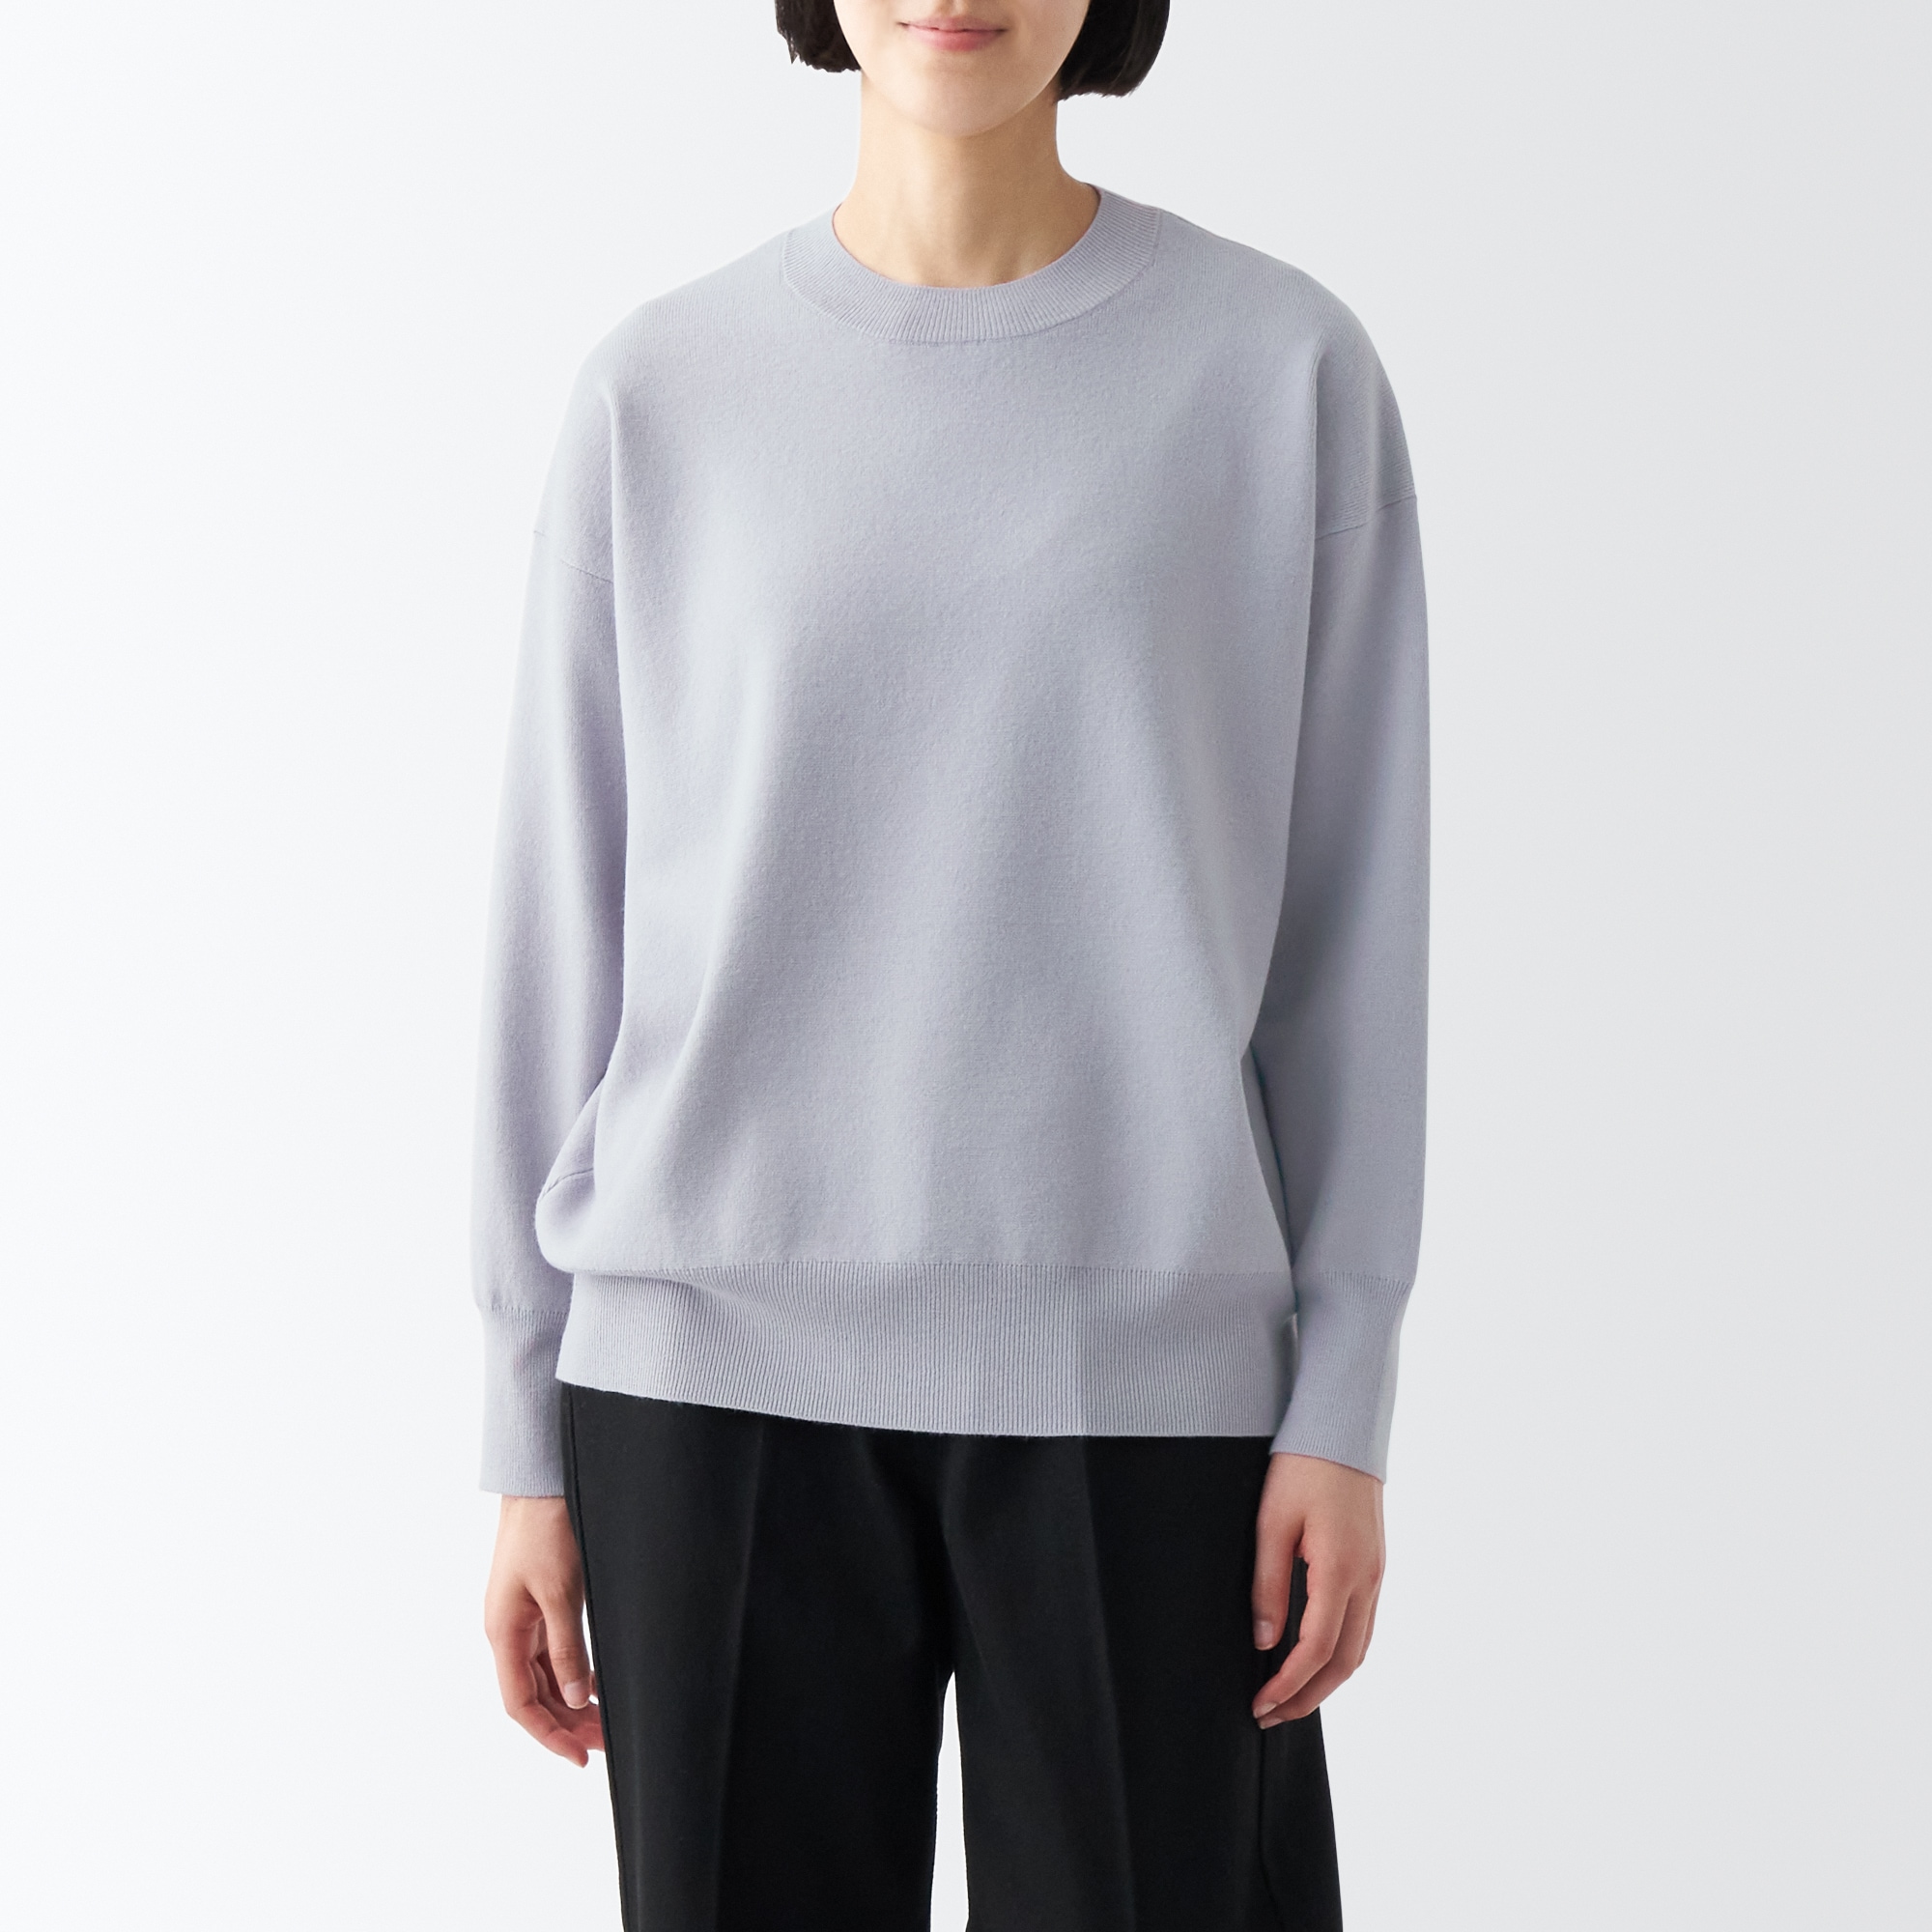 무인양품 일본 세탁가능 밀라노 리브 뜨개질 크루넥 스웨터